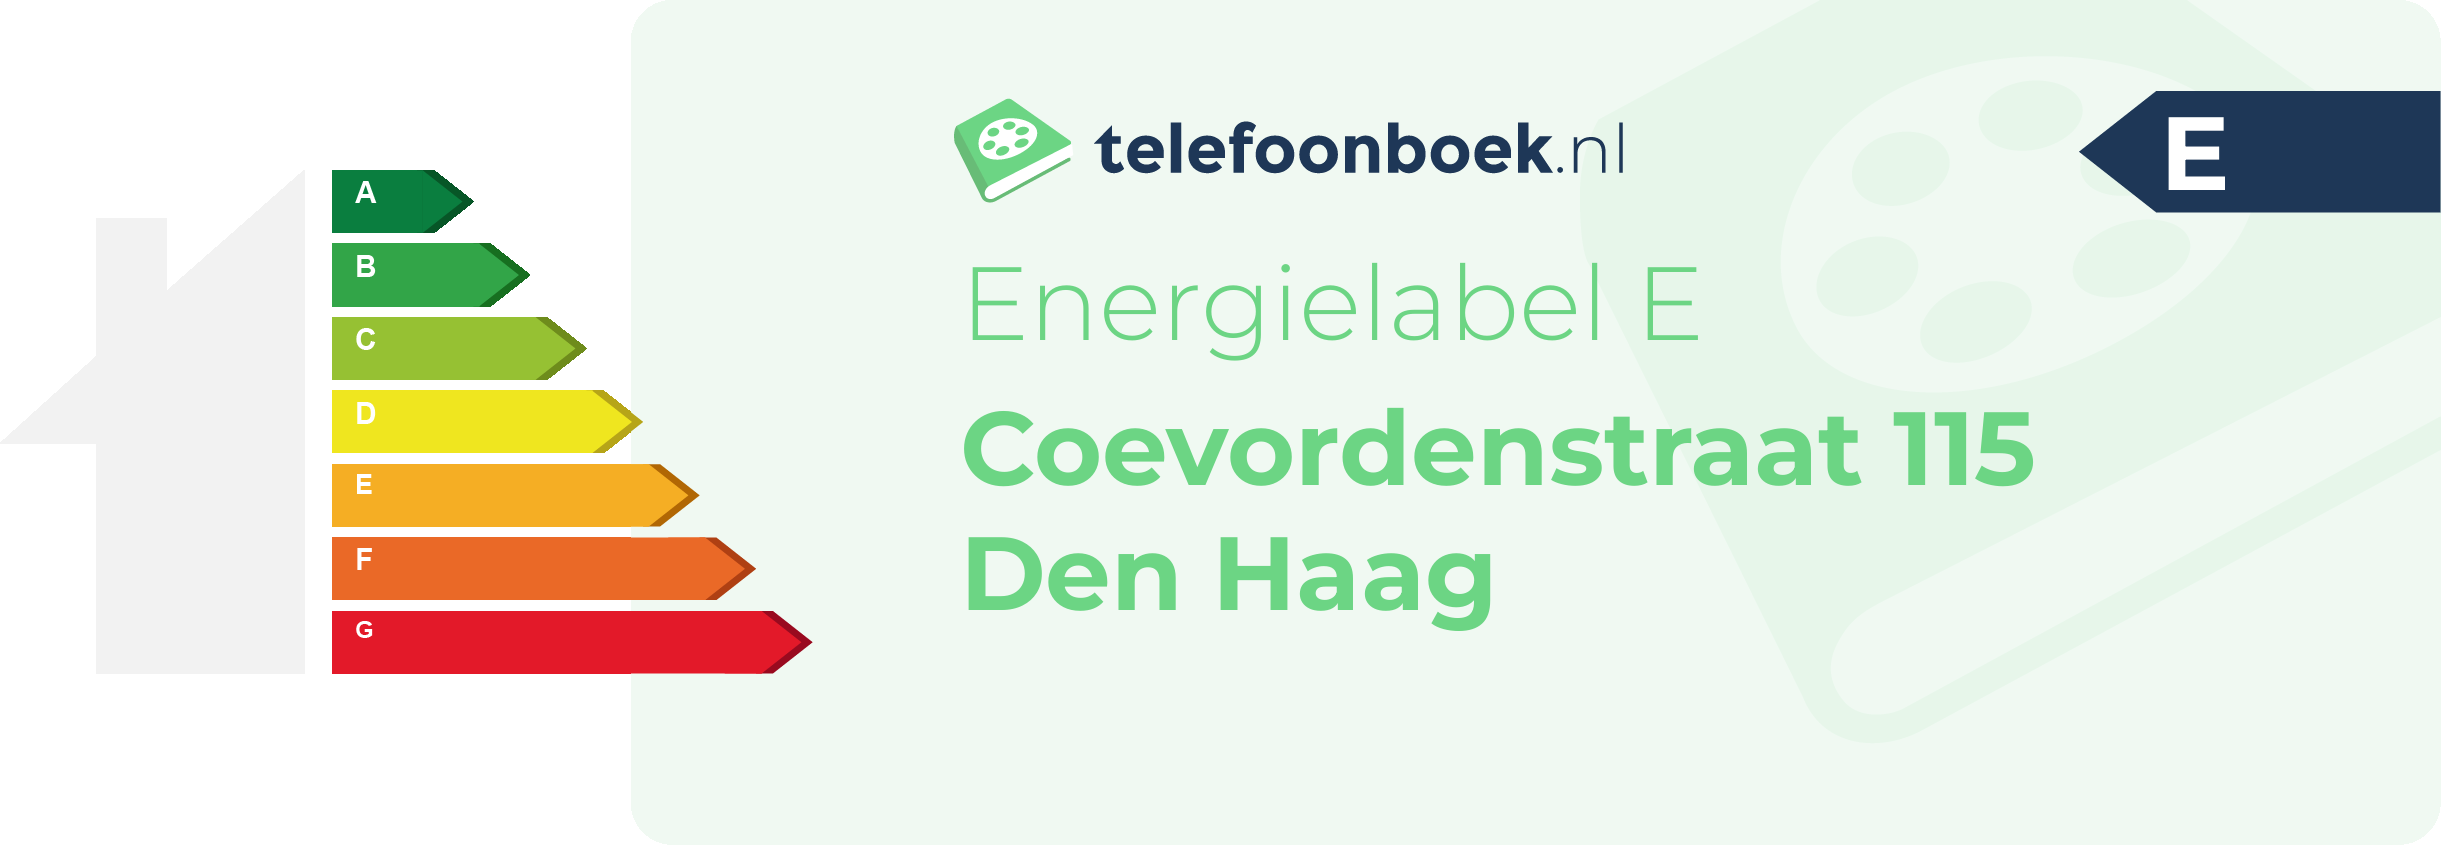 Energielabel Coevordenstraat 115 Den Haag